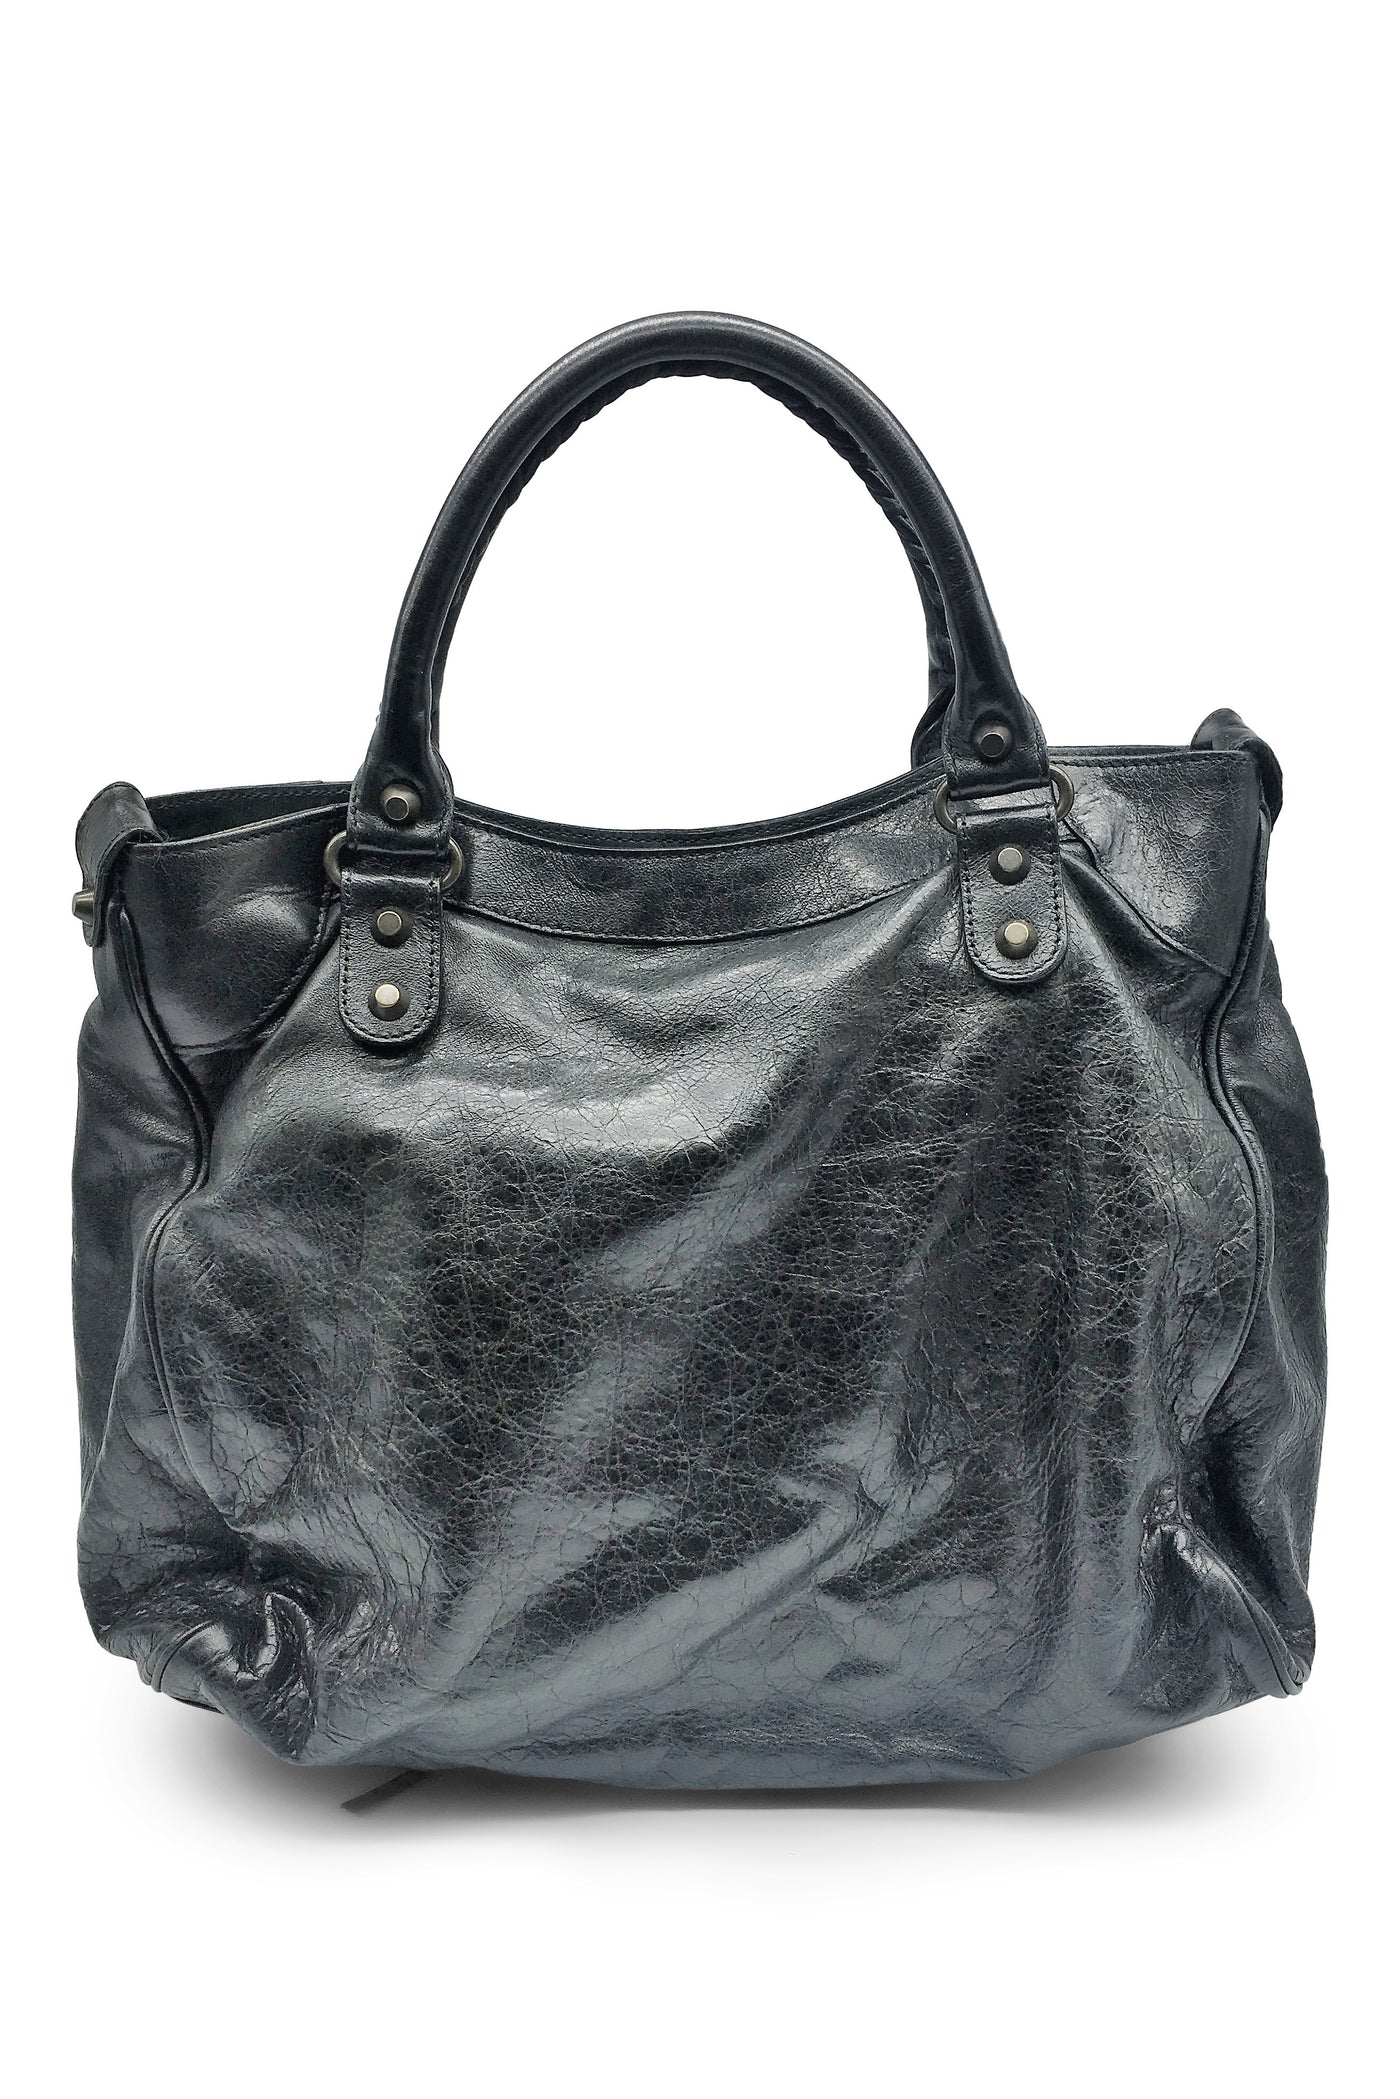 Balenciaga Velo Regular Hardware Bag in Black | REVOIR | Second Hand Revoir